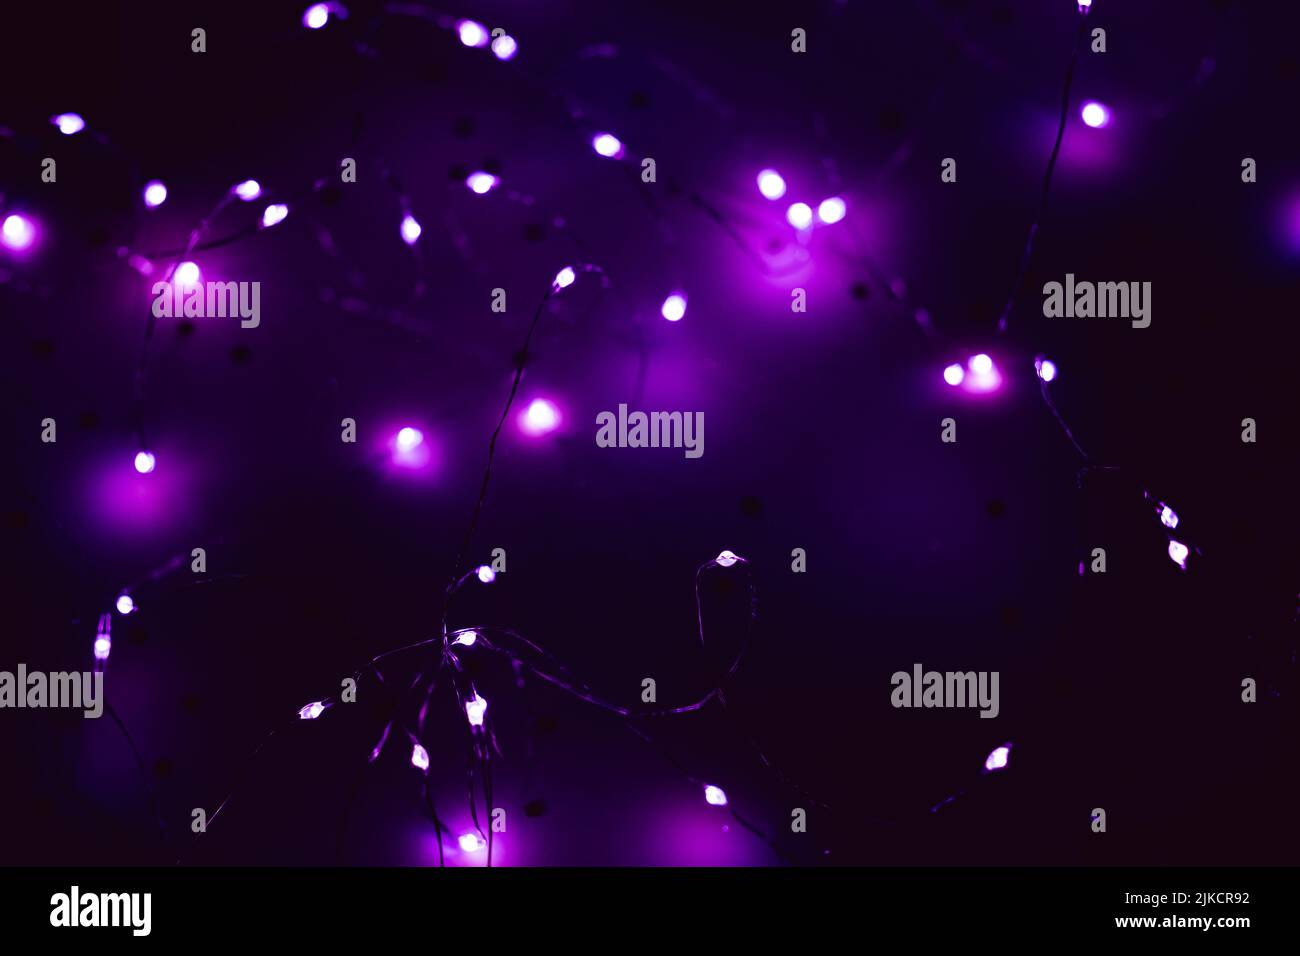 jeu de lumières à del blanc froid effet de flou violet Banque D'Images